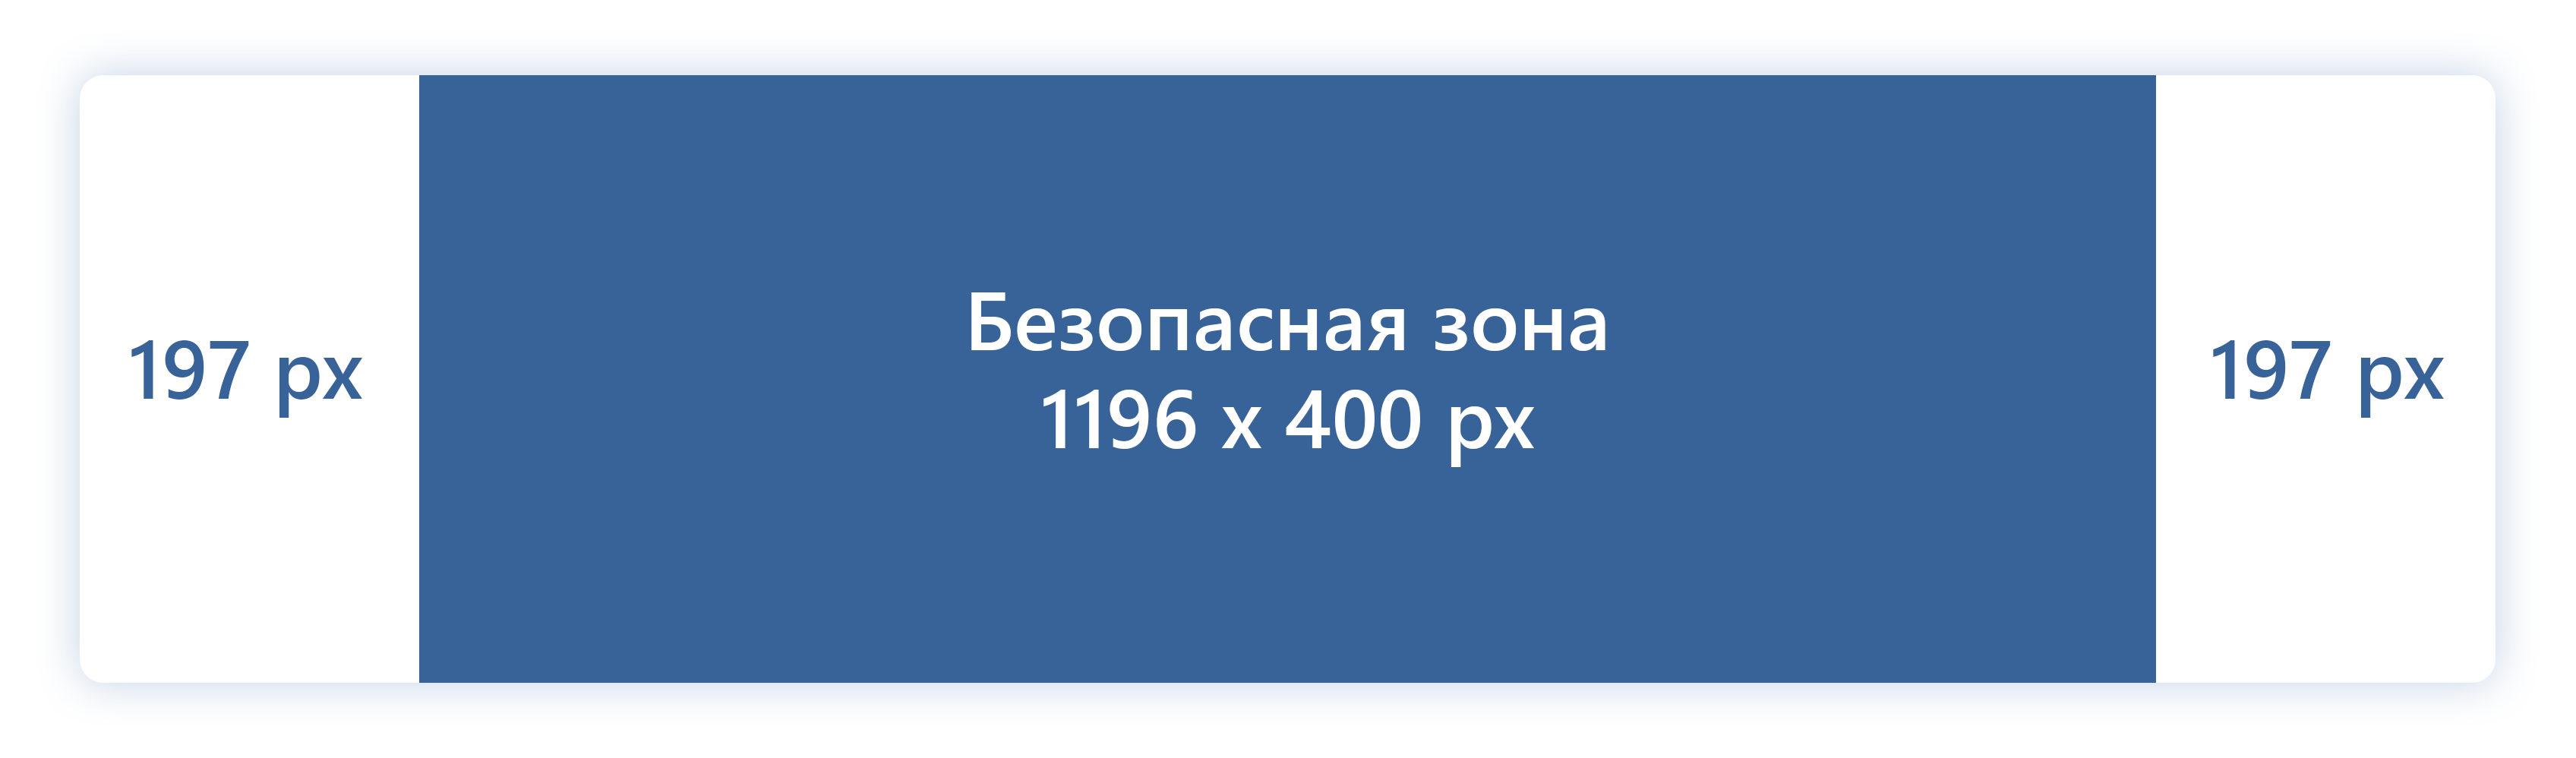 Размеры шапки для группы ВКонтакте